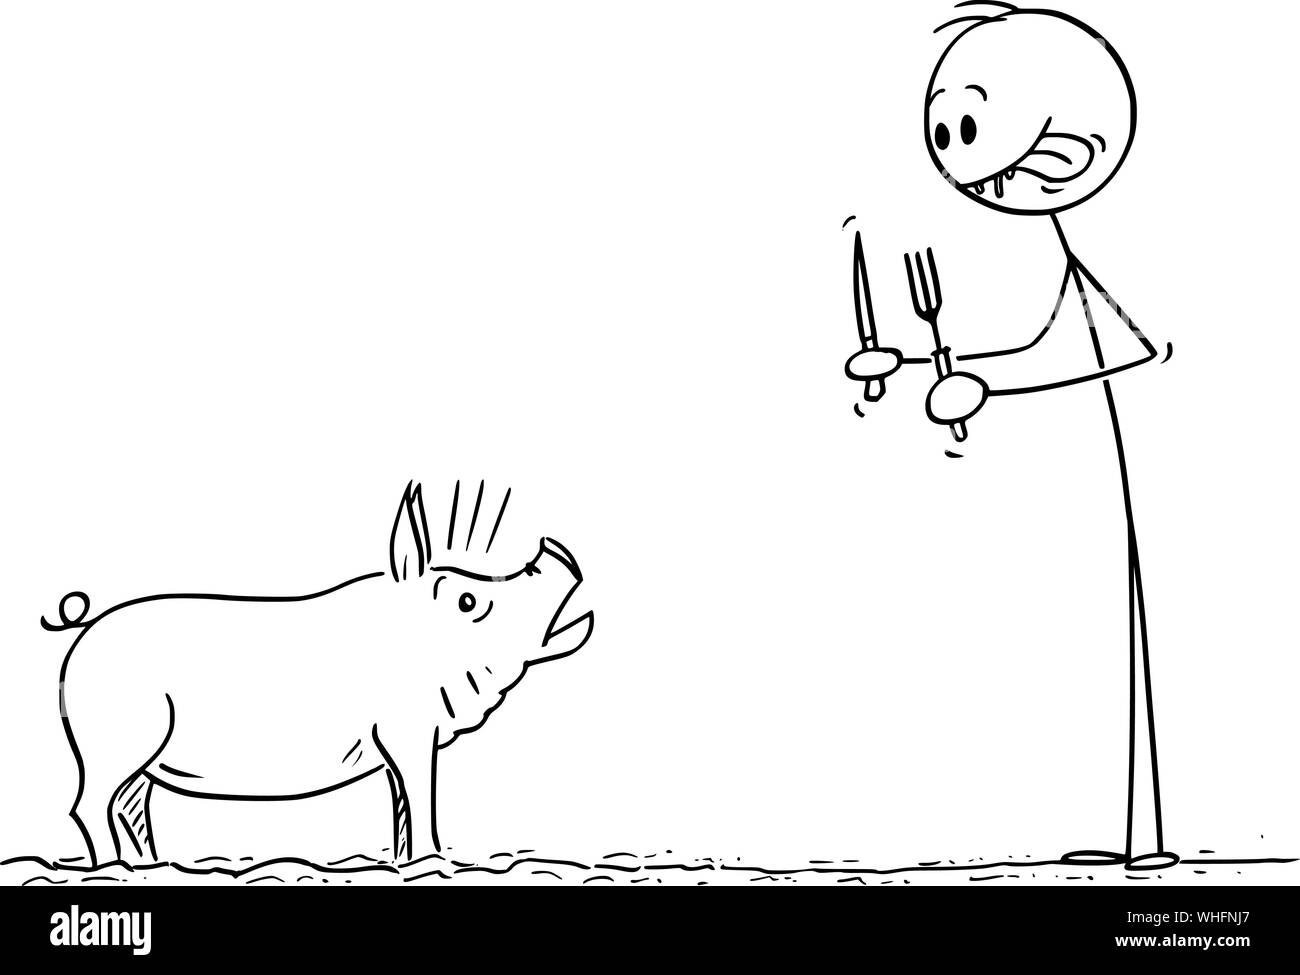 Vektor cartoon Strichmännchen Zeichnen konzeptionelle Darstellung der Mann seine Lippen smacking Während terrified Schwein mit Messer und Gabel in den Händen. Stock Vektor